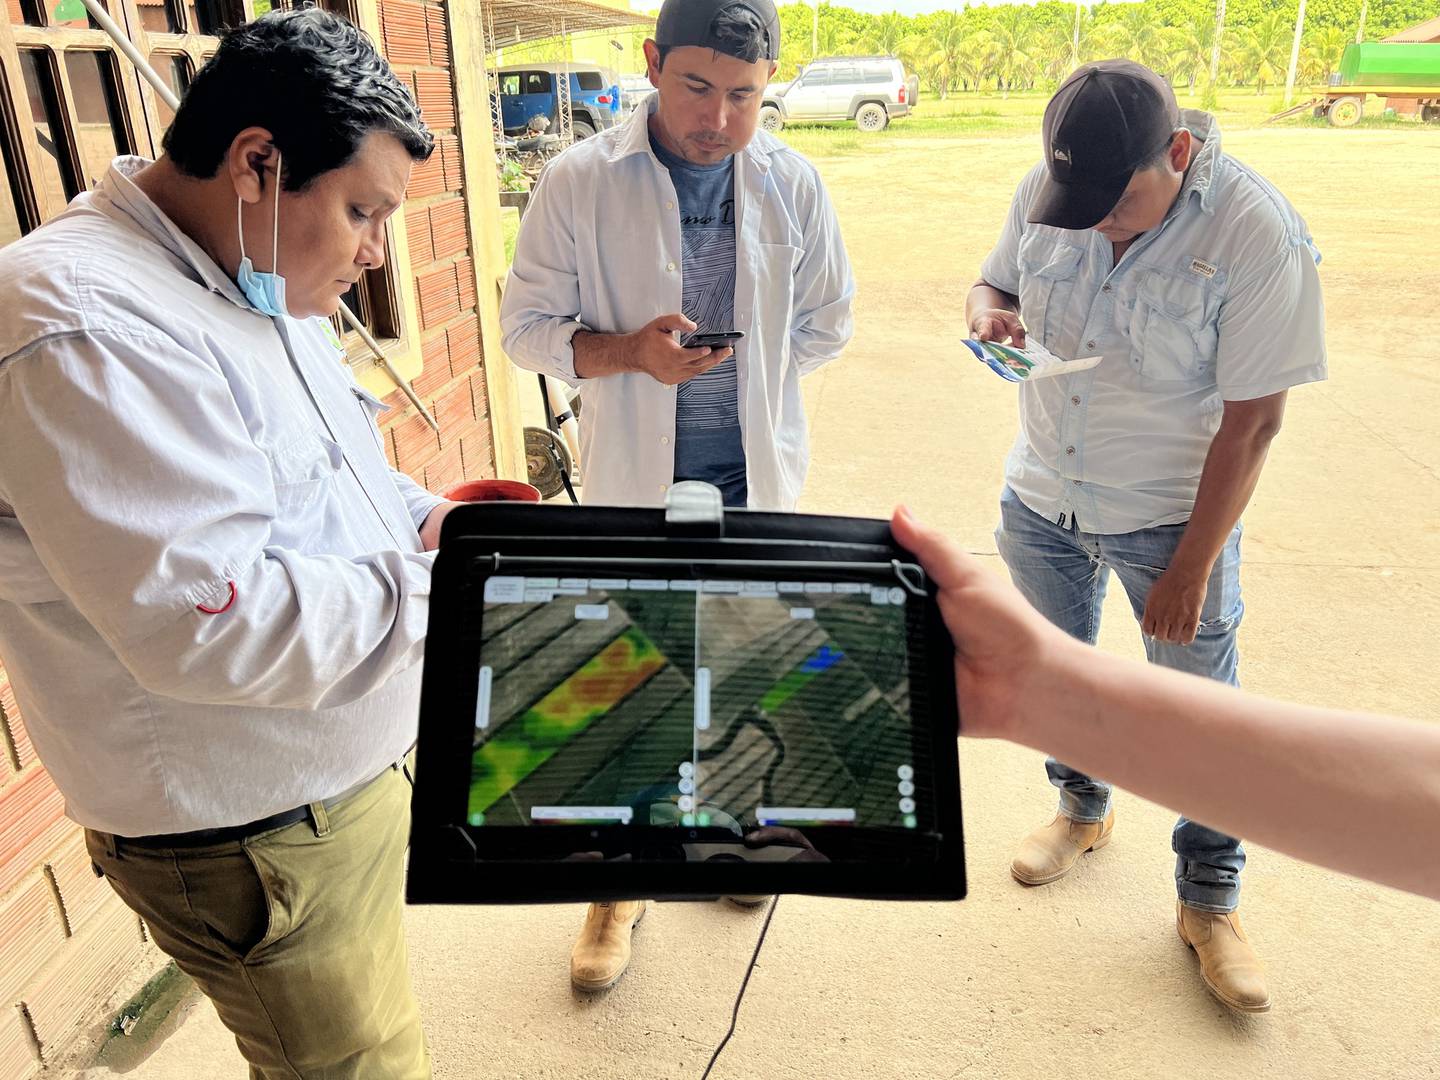 La solución busca digitalizar el trabajo del agro en Bolivia y otros países de la región